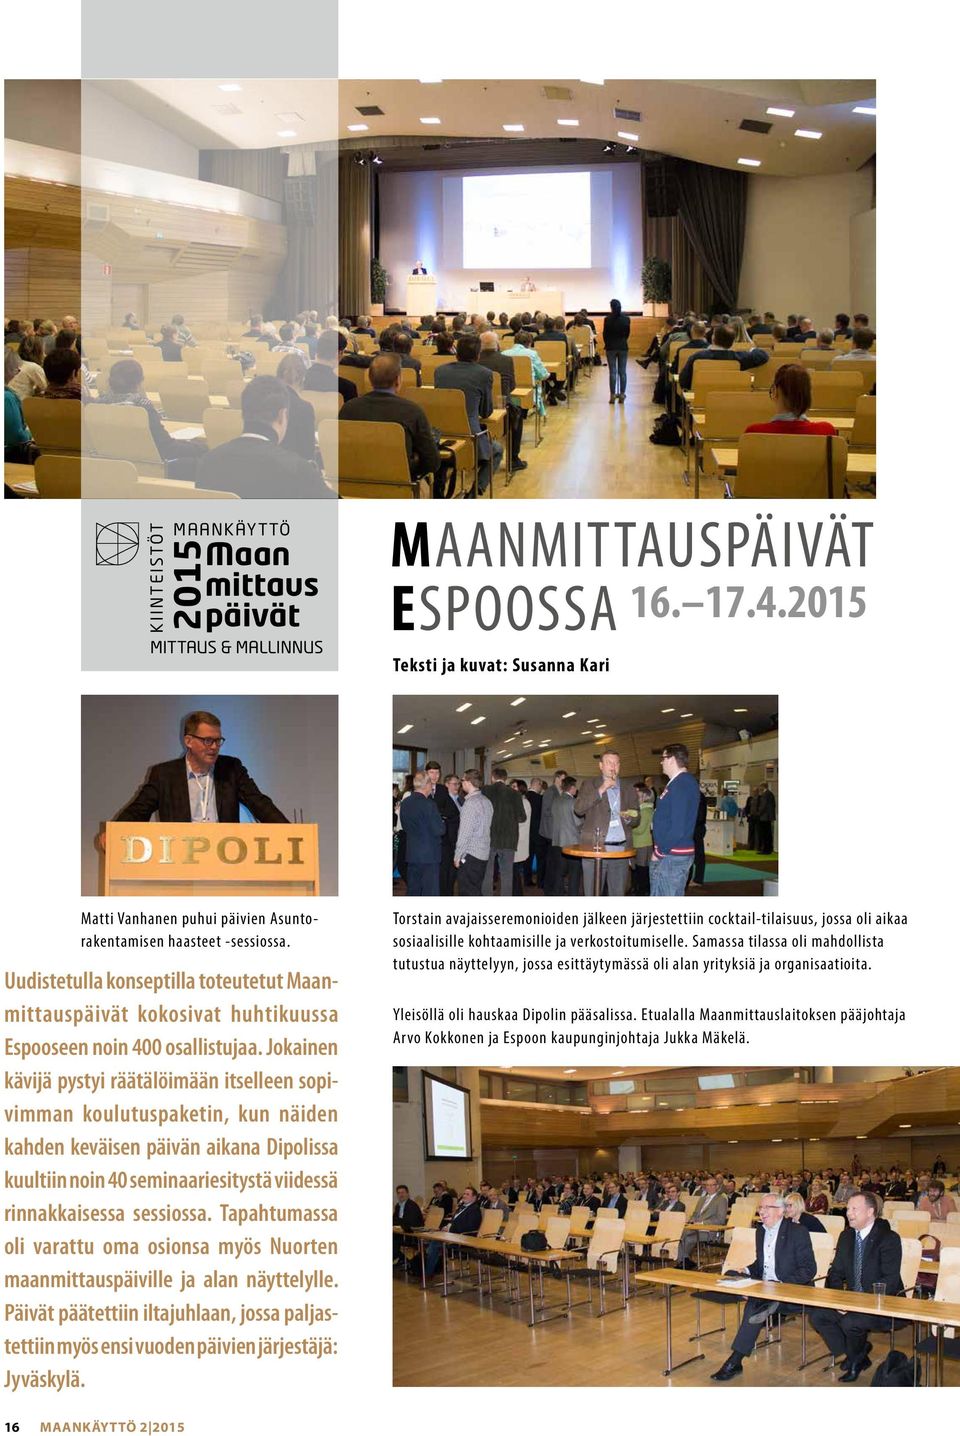 Uudistetulla konseptilla toteutetut Maanmittauspäivät kokosivat huhtikuussa Espooseen noin 400 osallistujaa.